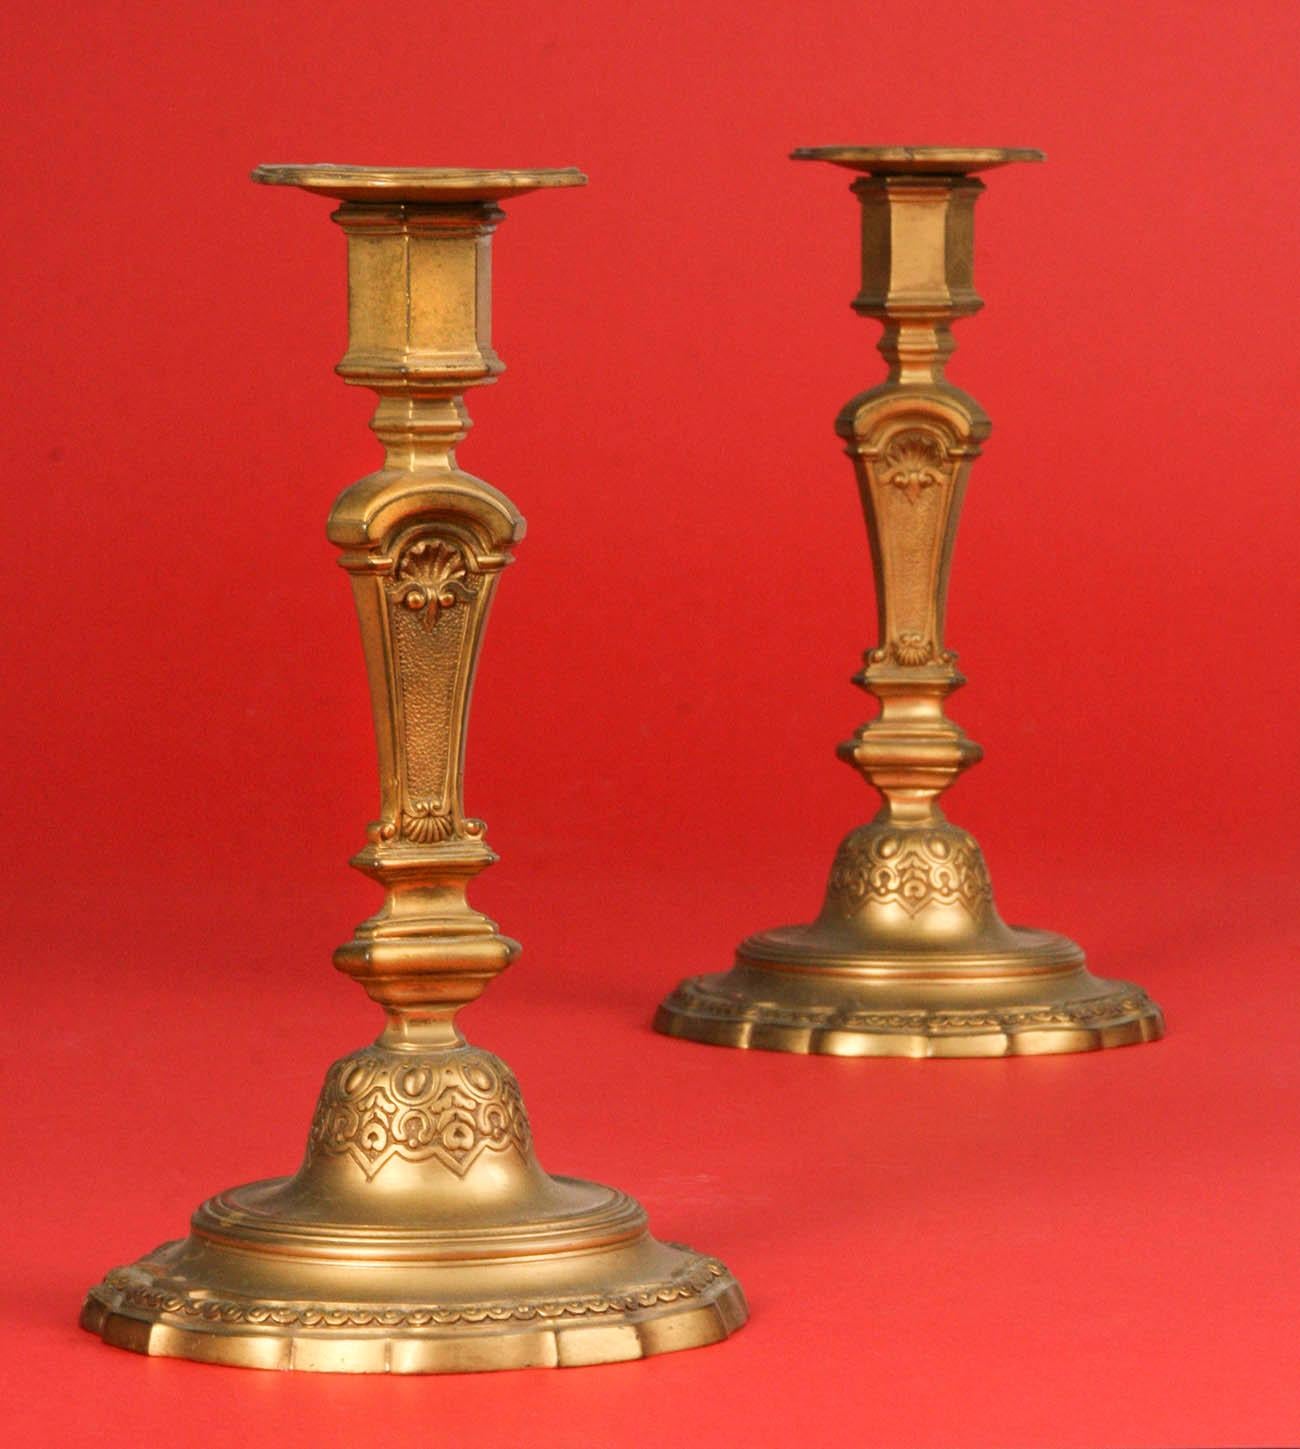 Regency Revival Pair of Gilded Bronze Candlesticks Regence Style